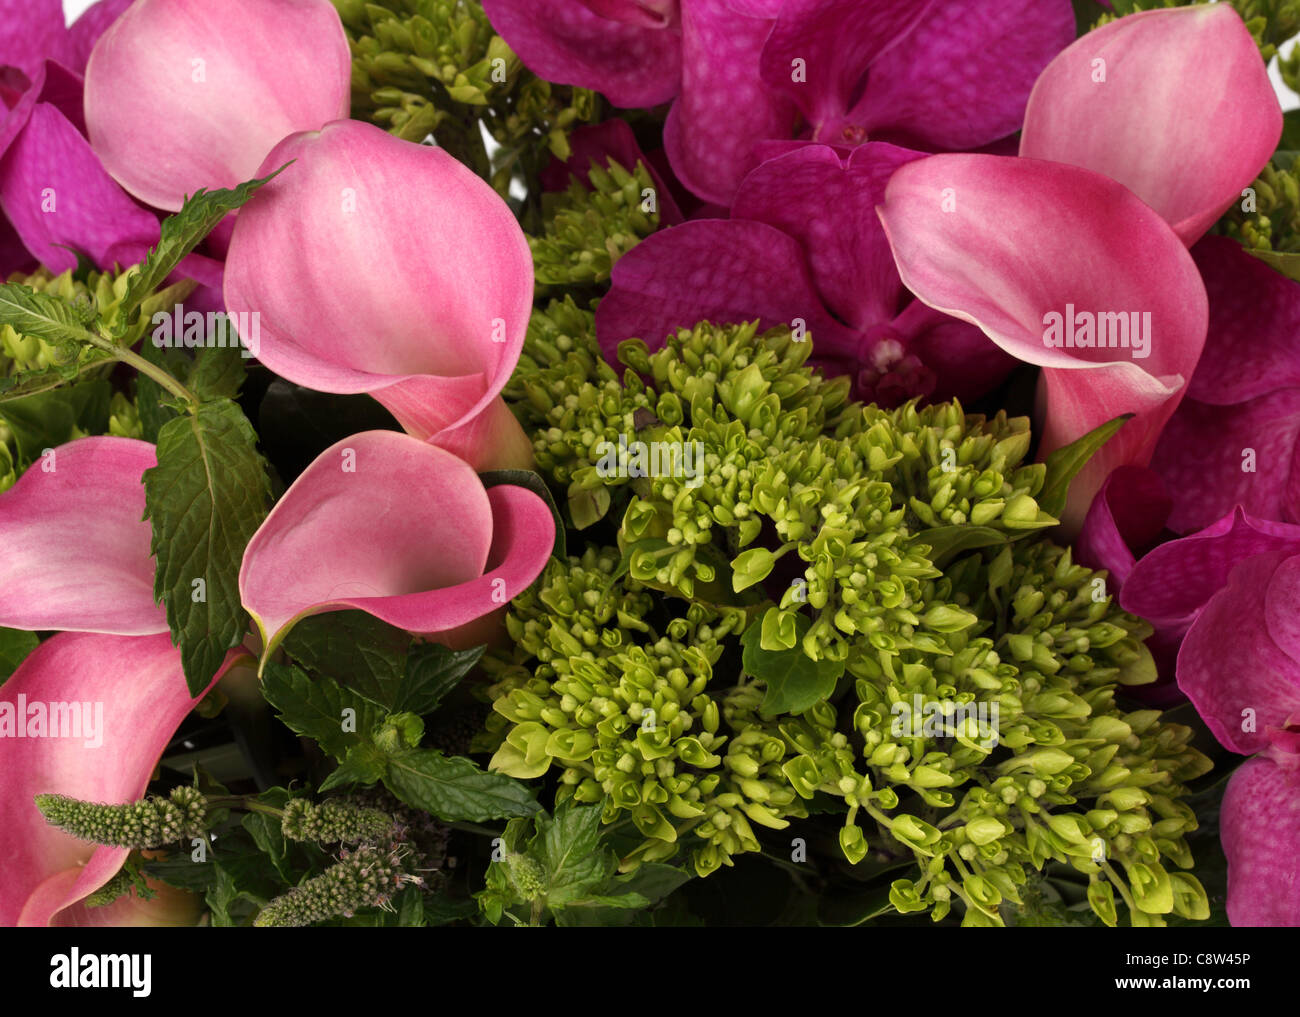 Un gros plan d'un bouquet de fleurs colorées. Des lis calla rose, violet, vert orchidées Vanda inconnu de pulvérisation. Banque D'Images